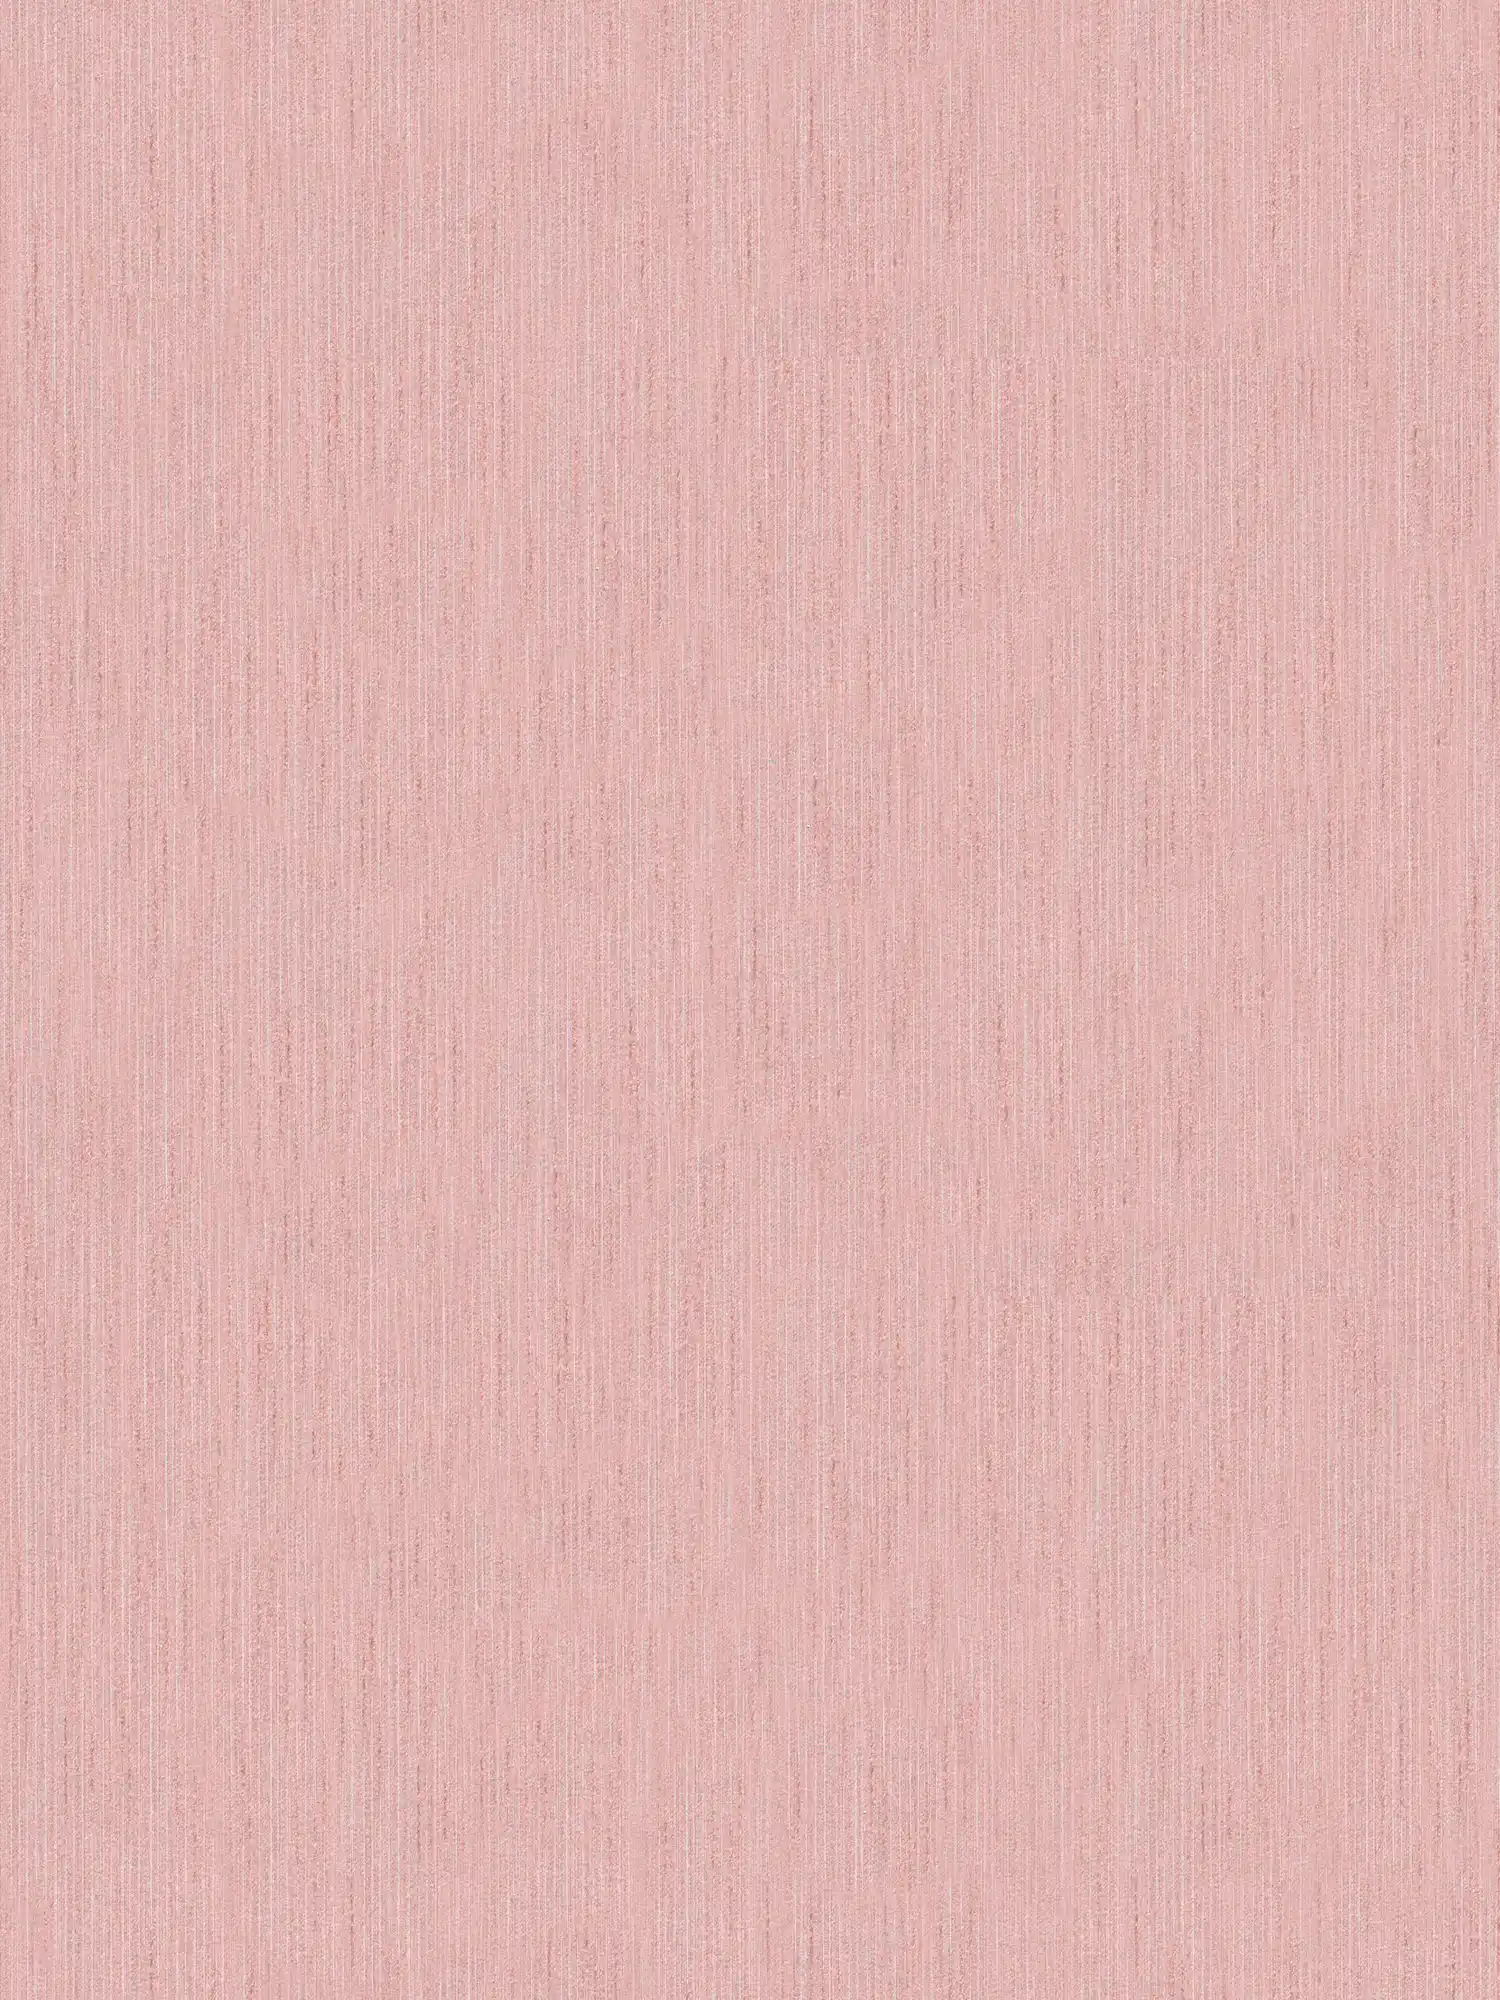 Oud roze behang effen gevlekt met structuureffect
